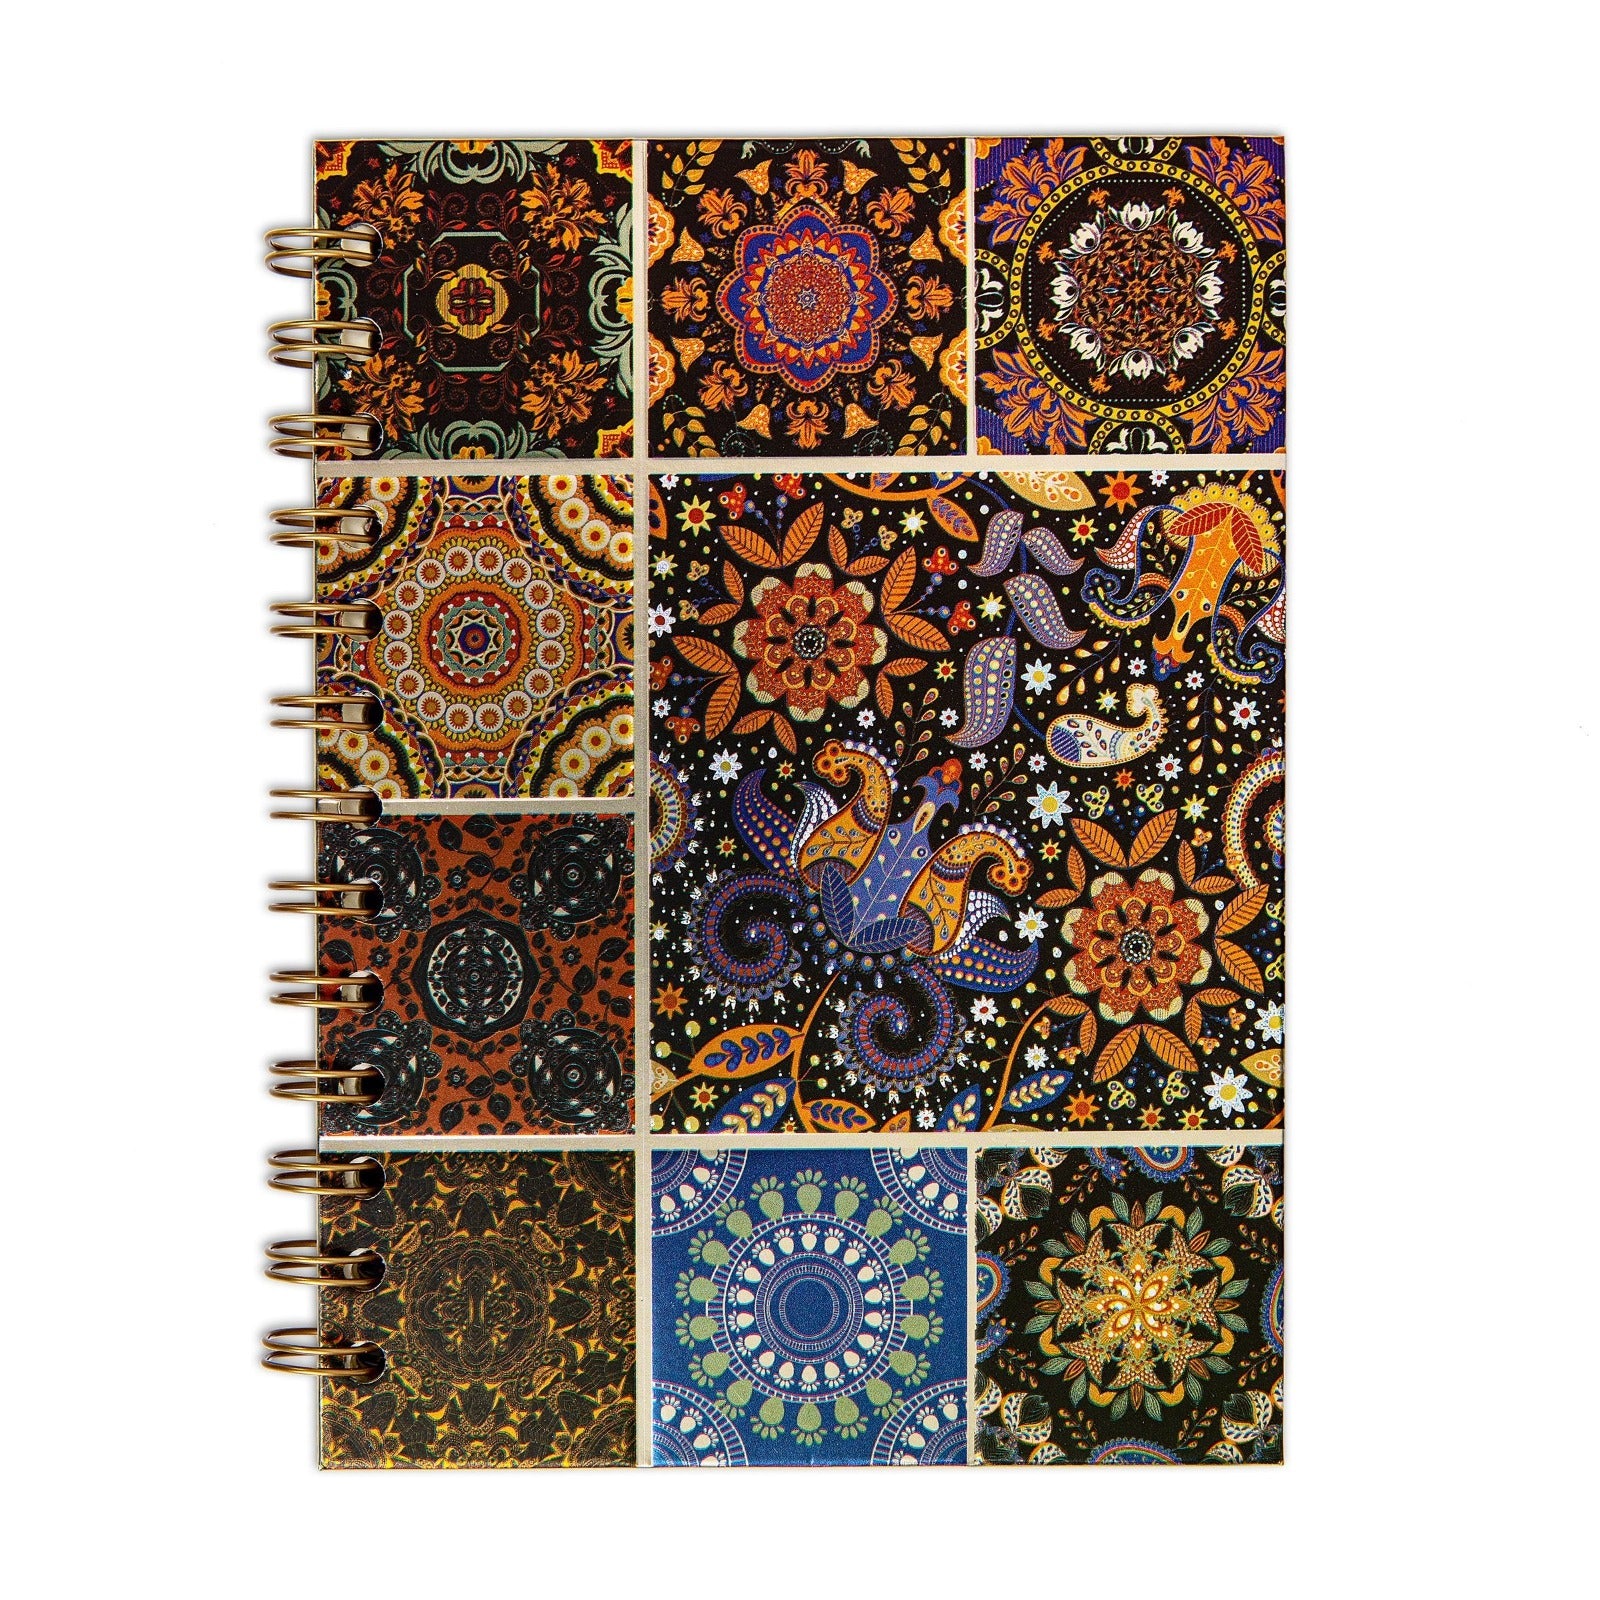 Cuaderno Tapa Dura con Estampado de Mosaico en Relieve. Formato A5